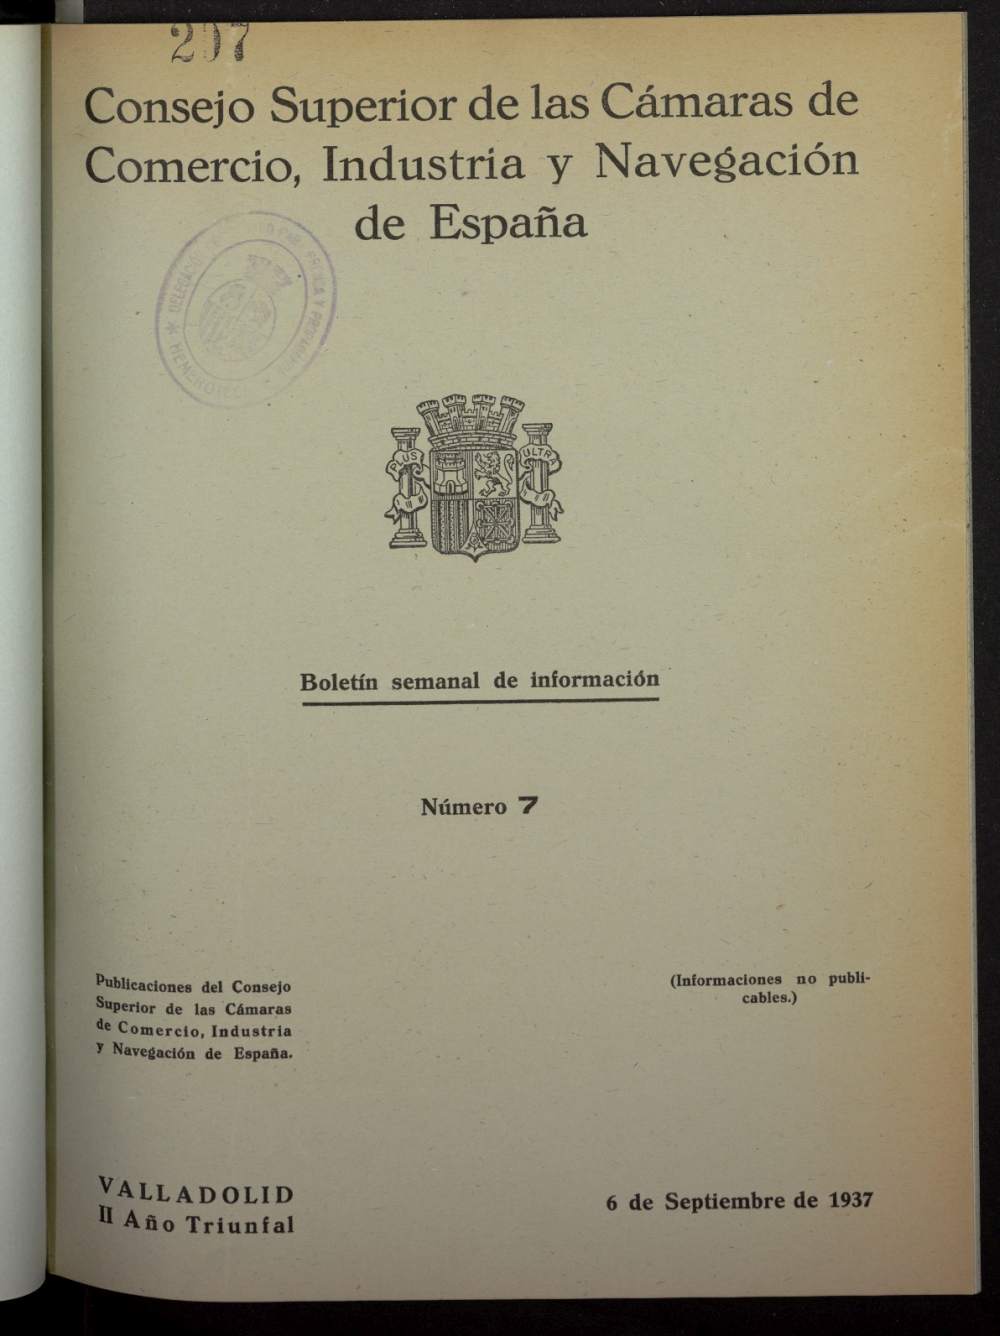 Boletín Semanal de Información. Consejo Superior de las Cámaras de Comercio de España del 6 de septiembre de 1937, nº 7